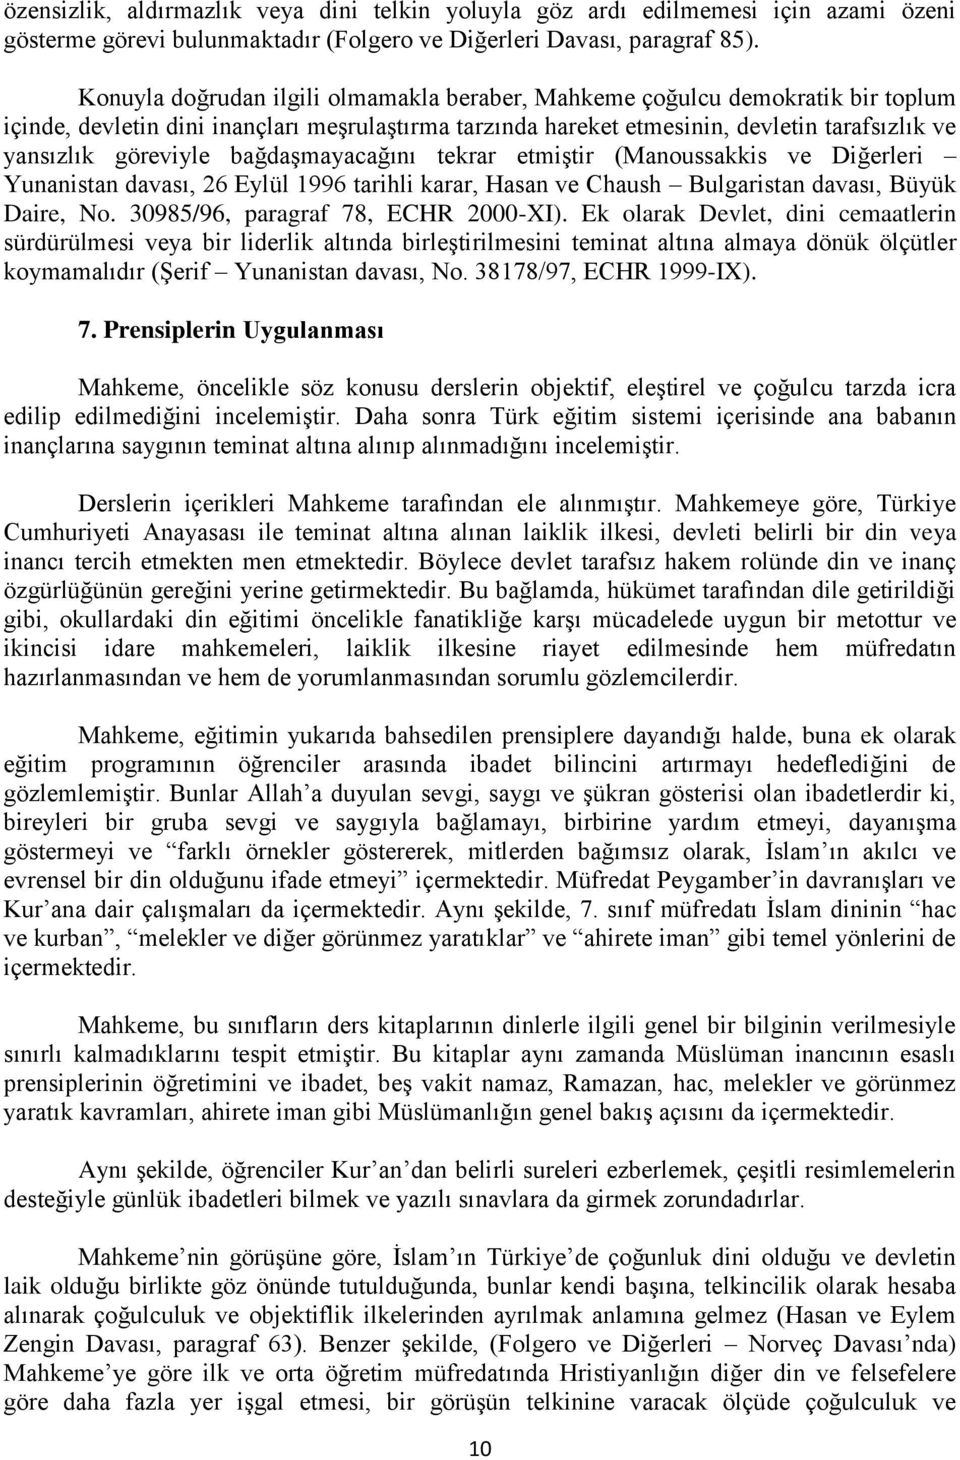 bağdaşmayacağını tekrar etmiştir (Manoussakkis ve Diğerleri Yunanistan davası, 26 Eylül 1996 tarihli karar, Hasan ve Chaush Bulgaristan davası, Büyük Daire, No. 30985/96, paragraf 78, ECHR 2000-XI).